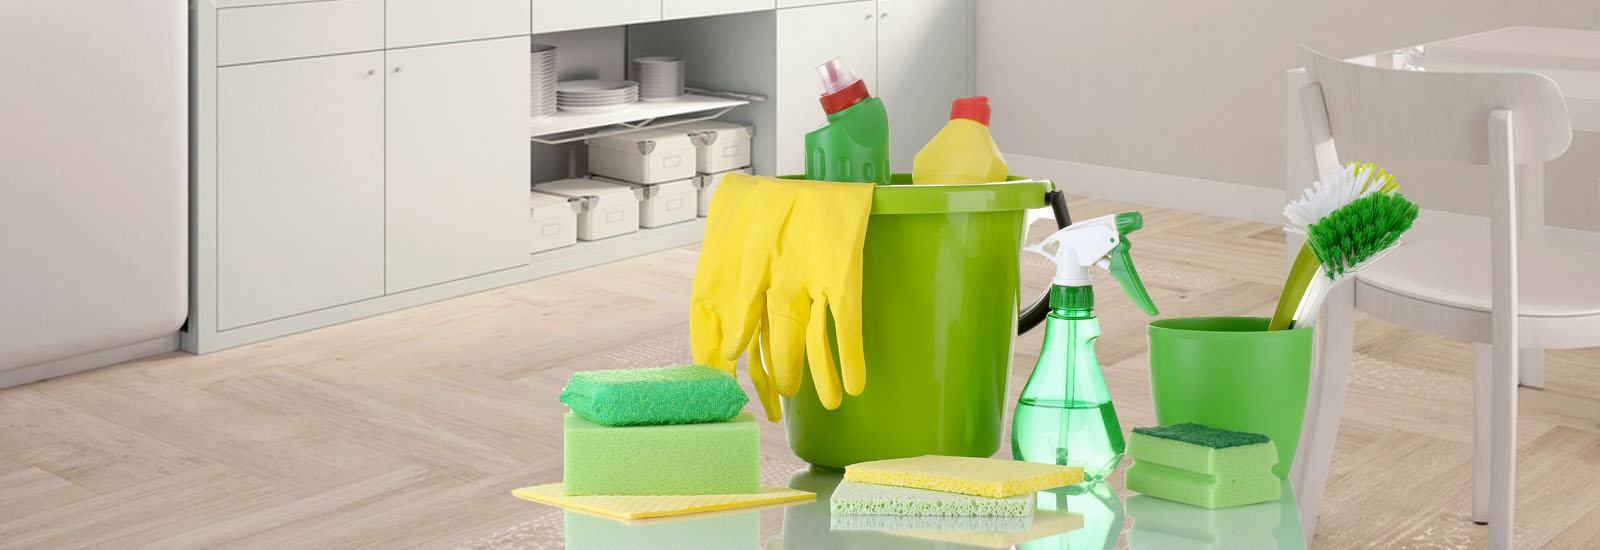 شركة تنظيف منازل بالرياض|شركة مرحبا|0533267065